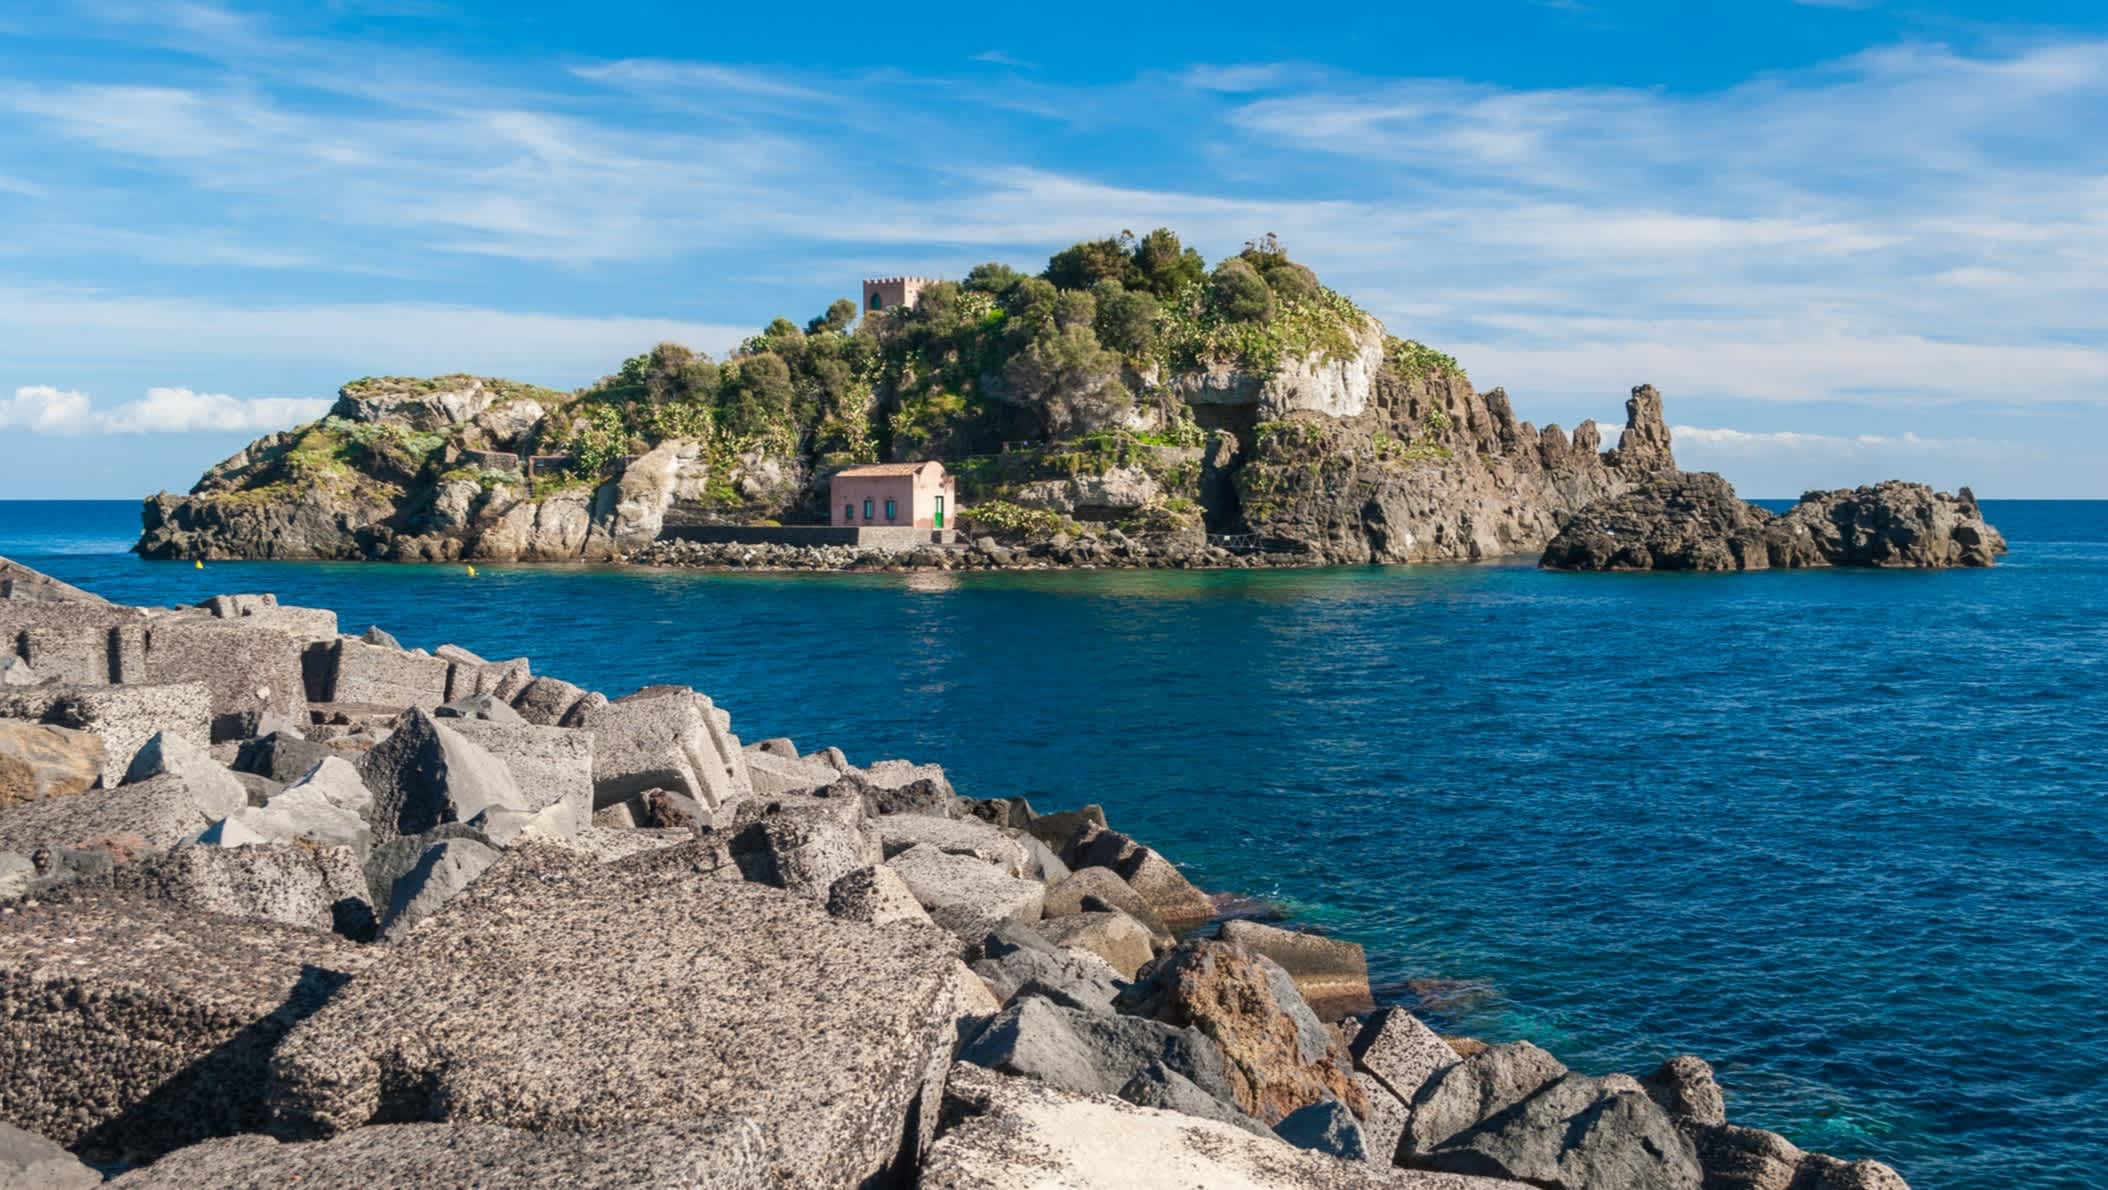 Vue sur l'île de Lachea depuis des rochers sur la Riviera dei Ciclopi ", en Sicile, Italie.

